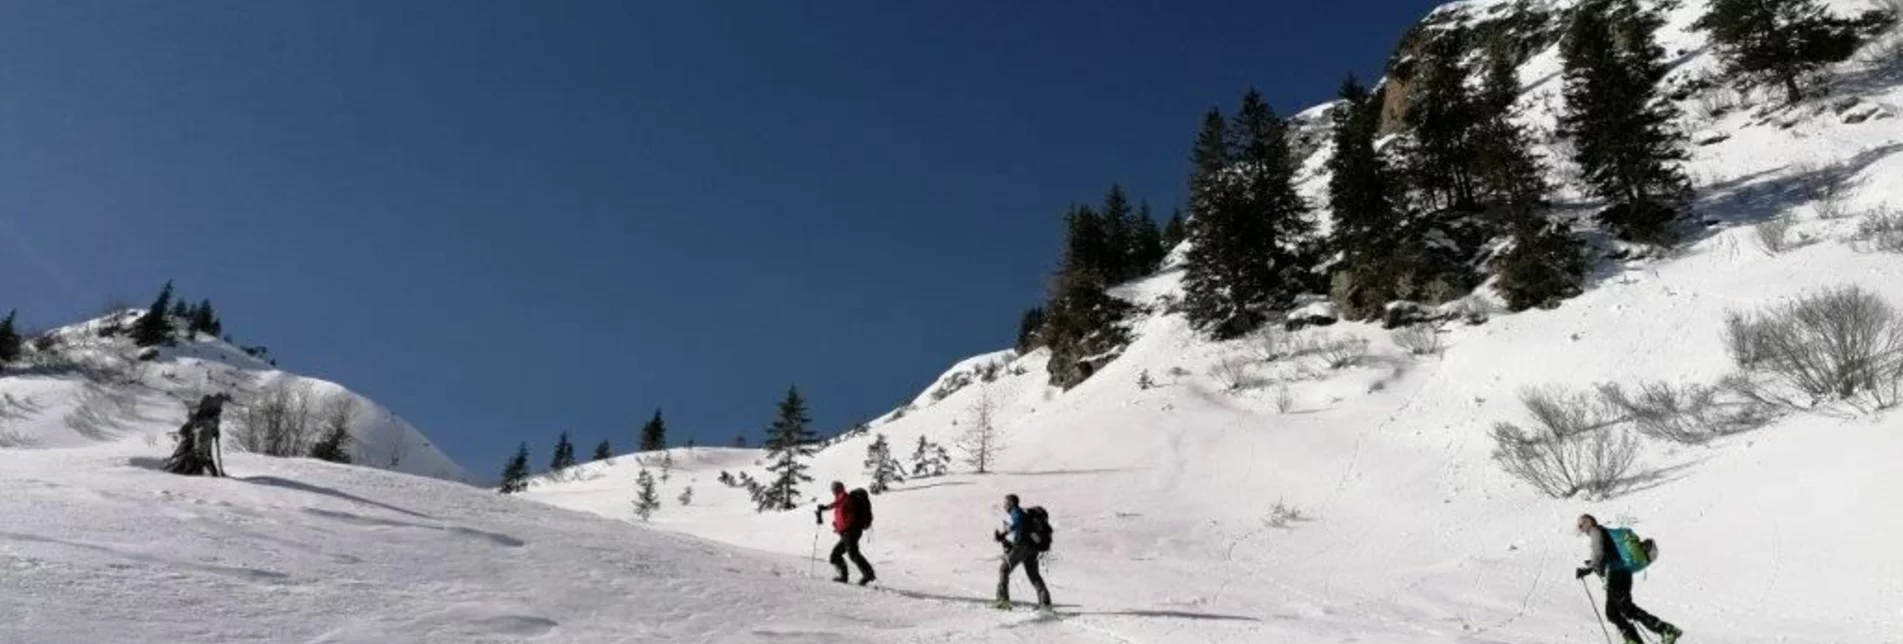 Skitour Skitour Blaseneck - Touren-Impression #1 | © TV Gesäuse